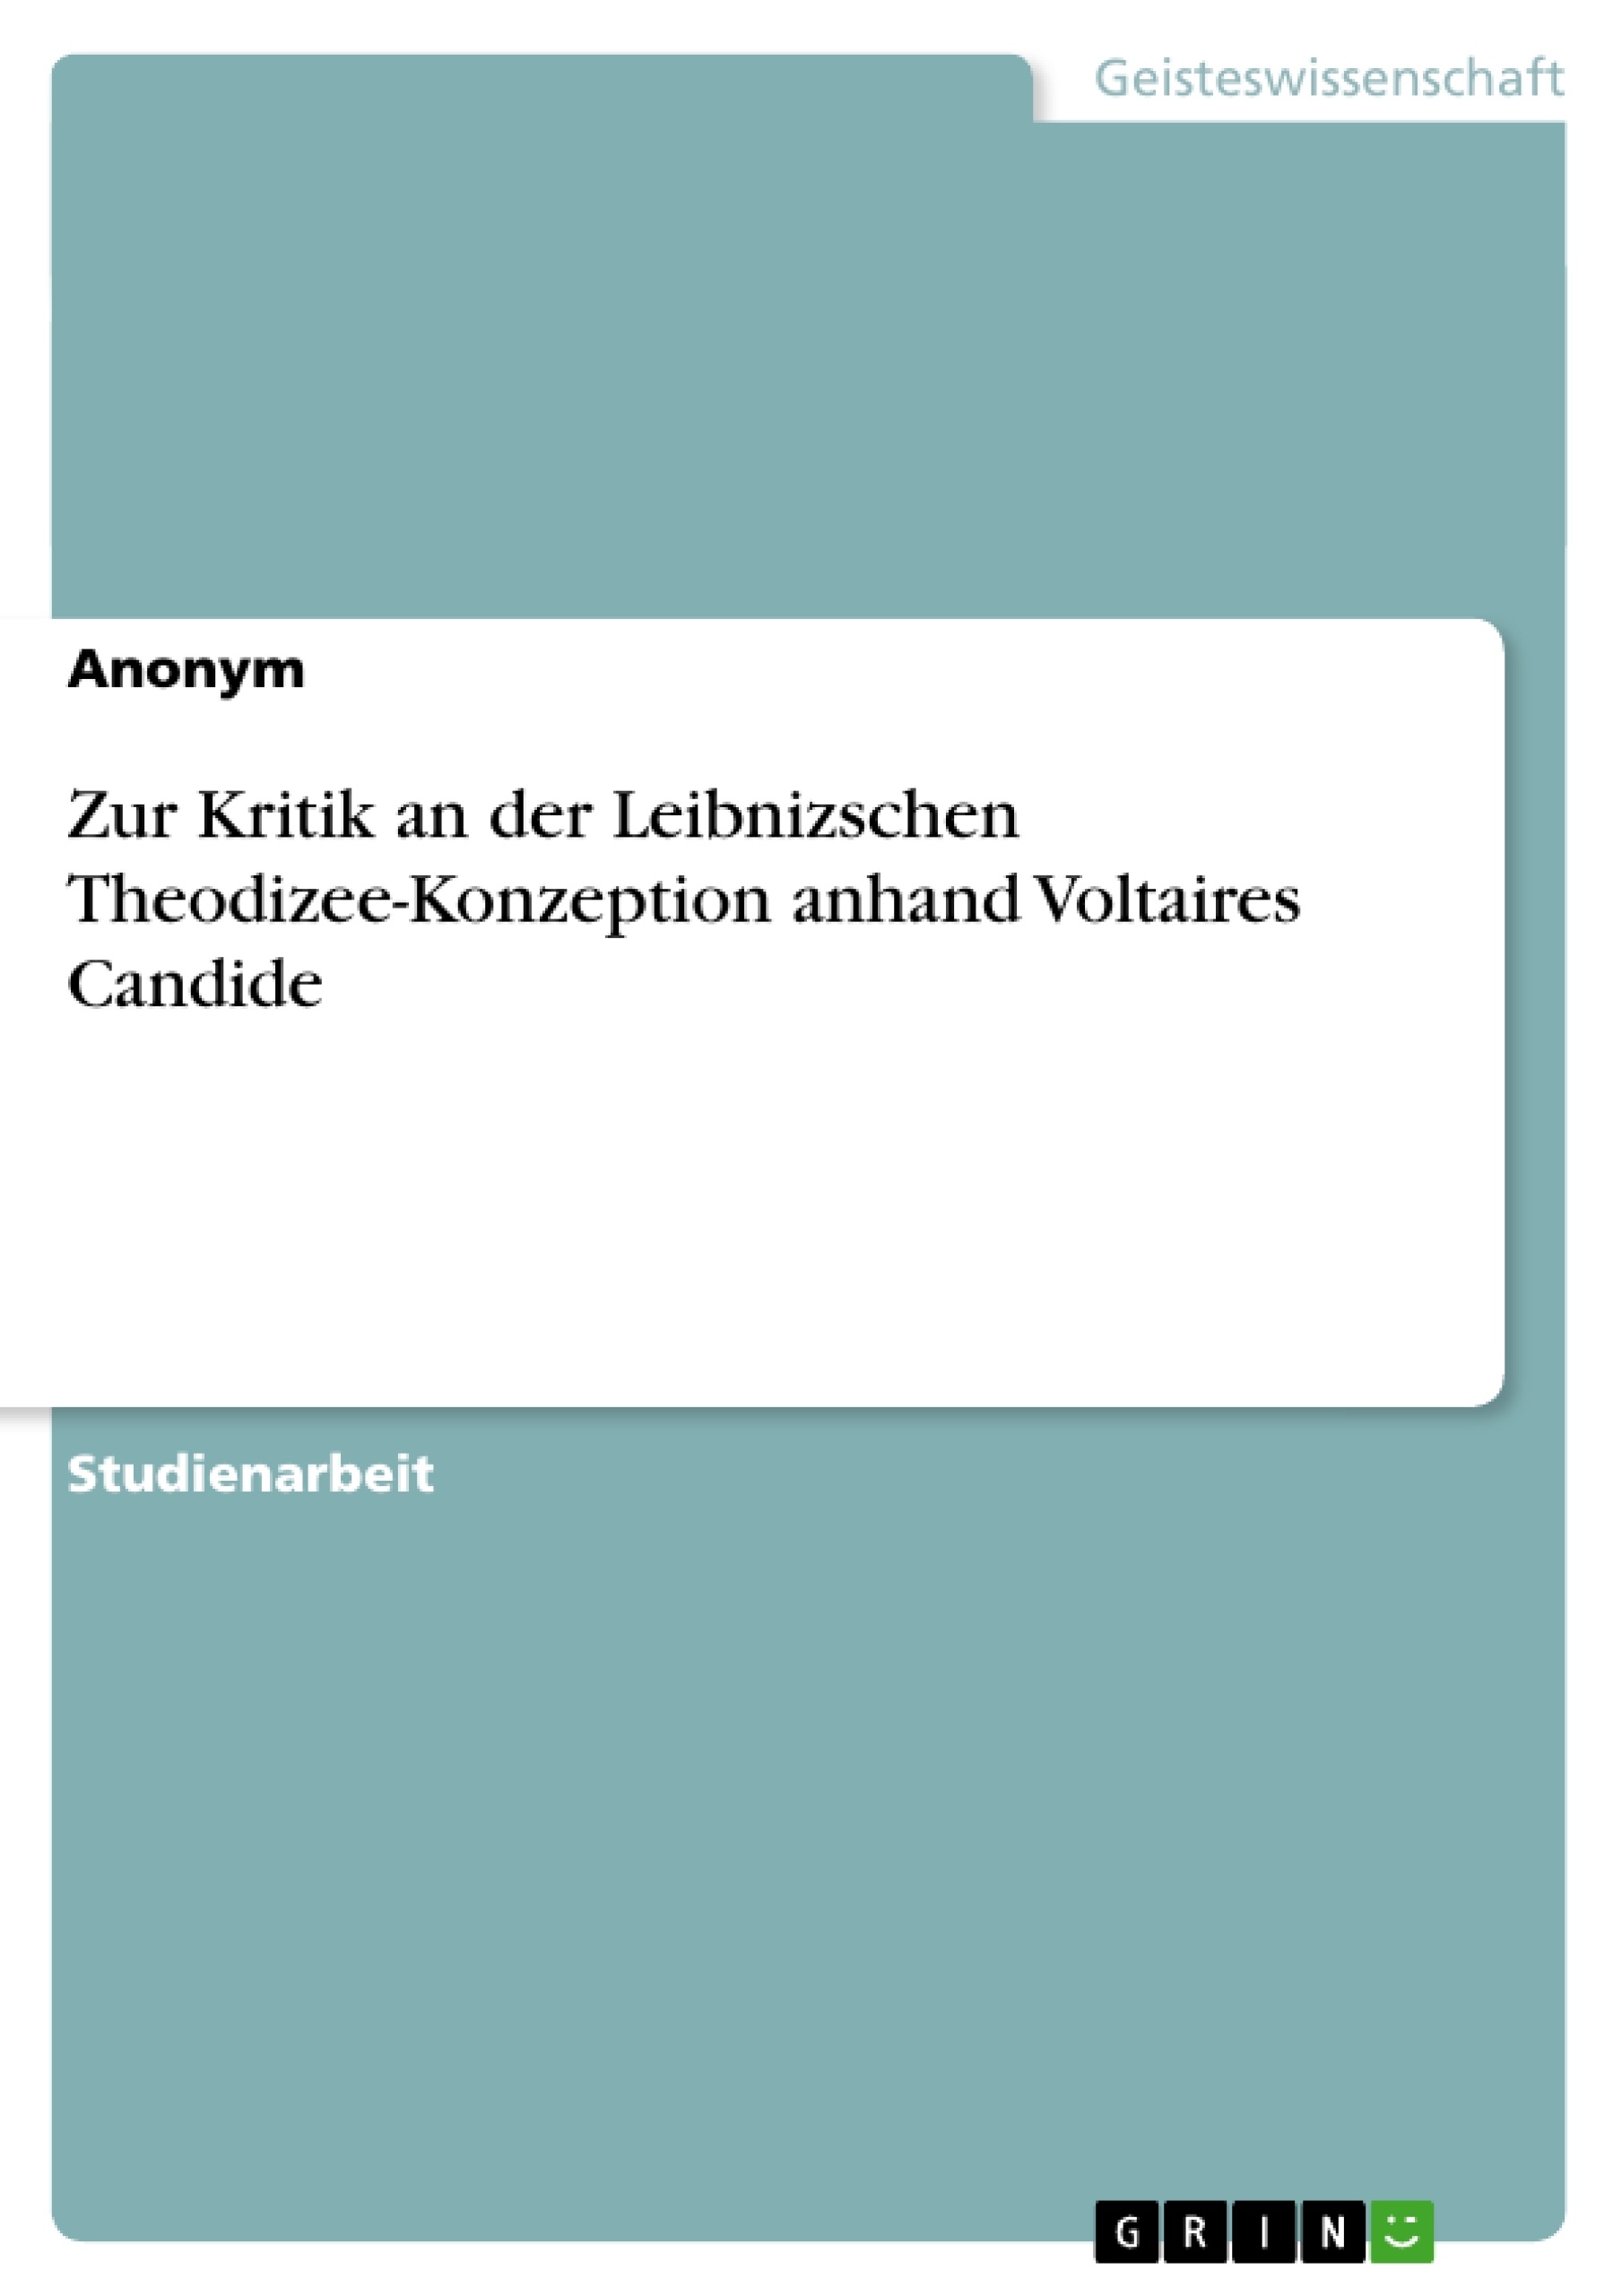 Title: Zur Kritik an der Leibnizschen Theodizee-Konzeption anhand Voltaires Candide